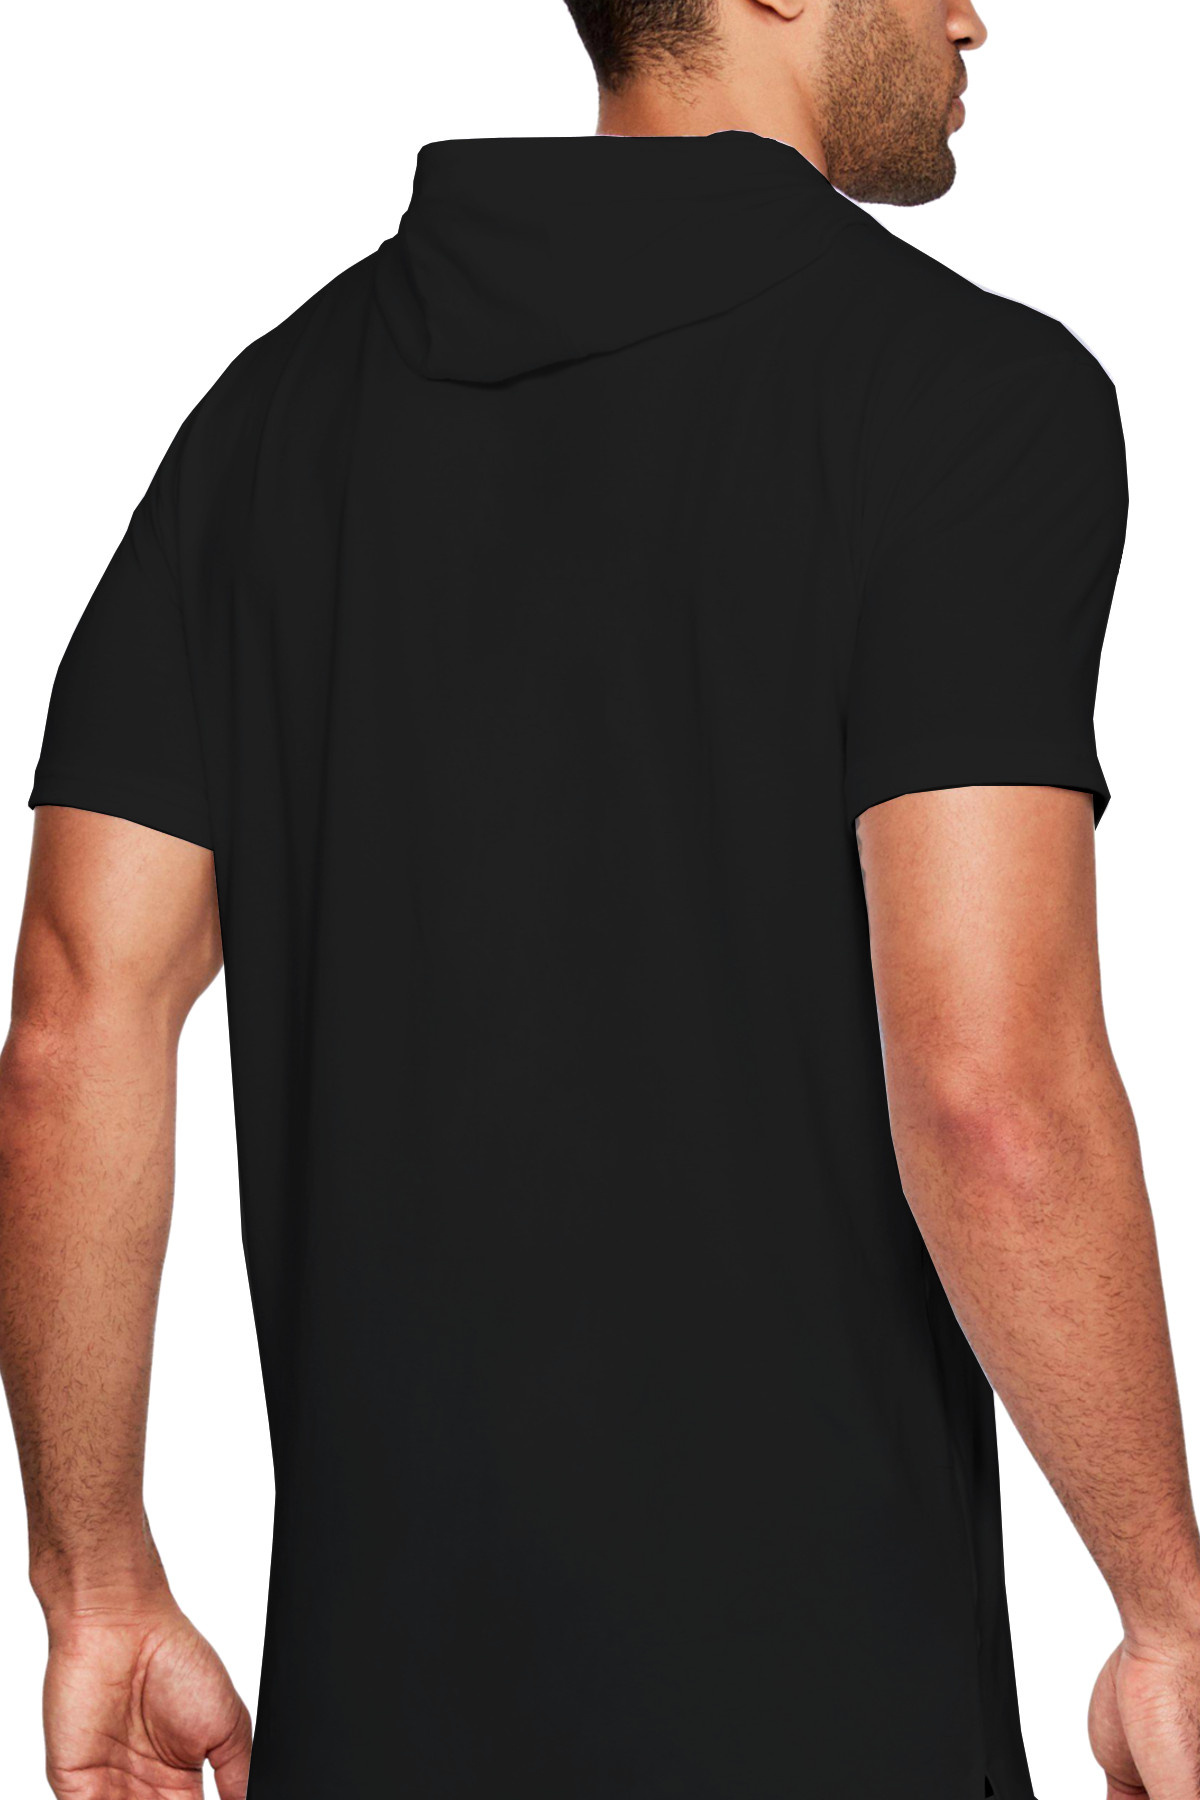 Dijital Örümcek Siyah Kapşonlu Kısa Kollu Erkek T-shirt